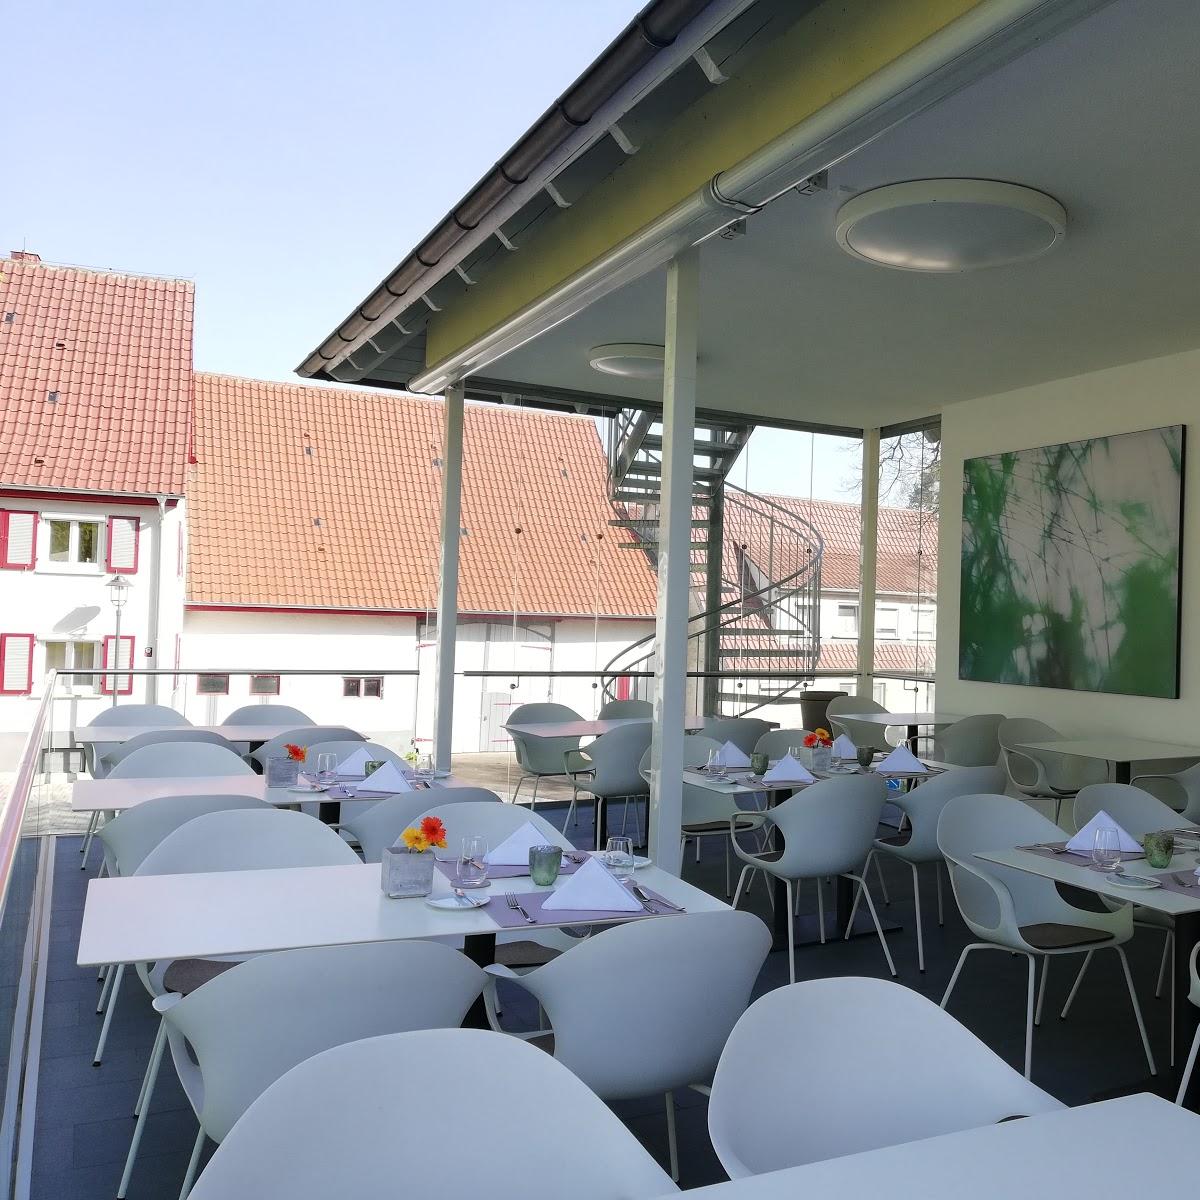 Restaurant "Hotel Gasthof zum Bad" in Langenau